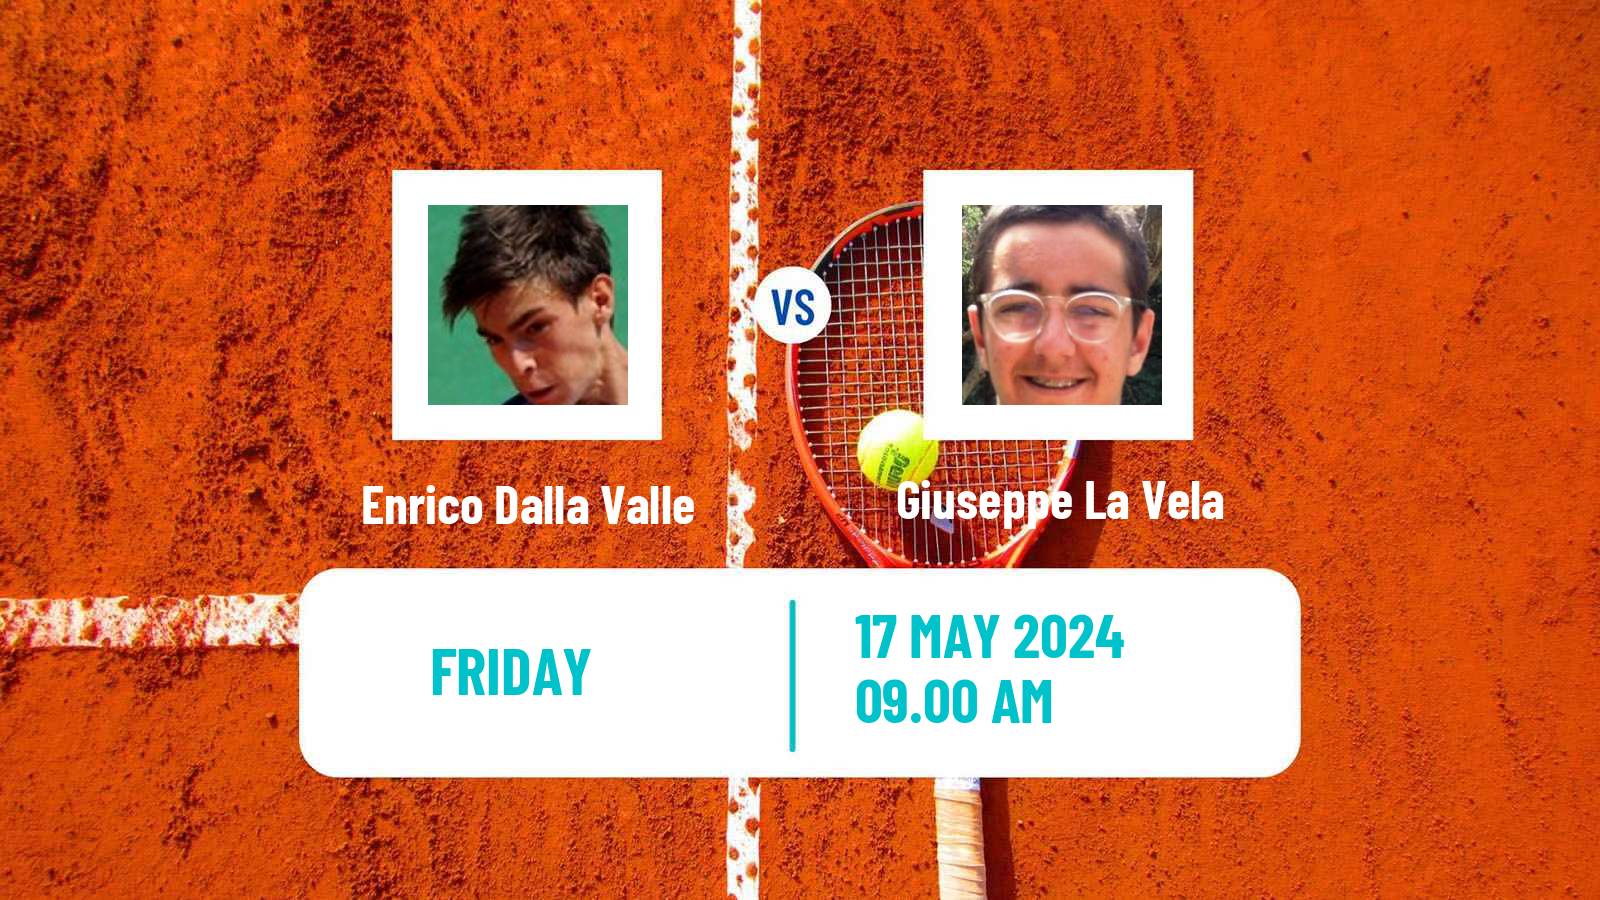 Tennis ITF M25 Reggio Emilia Men Enrico Dalla Valle - Giuseppe La Vela